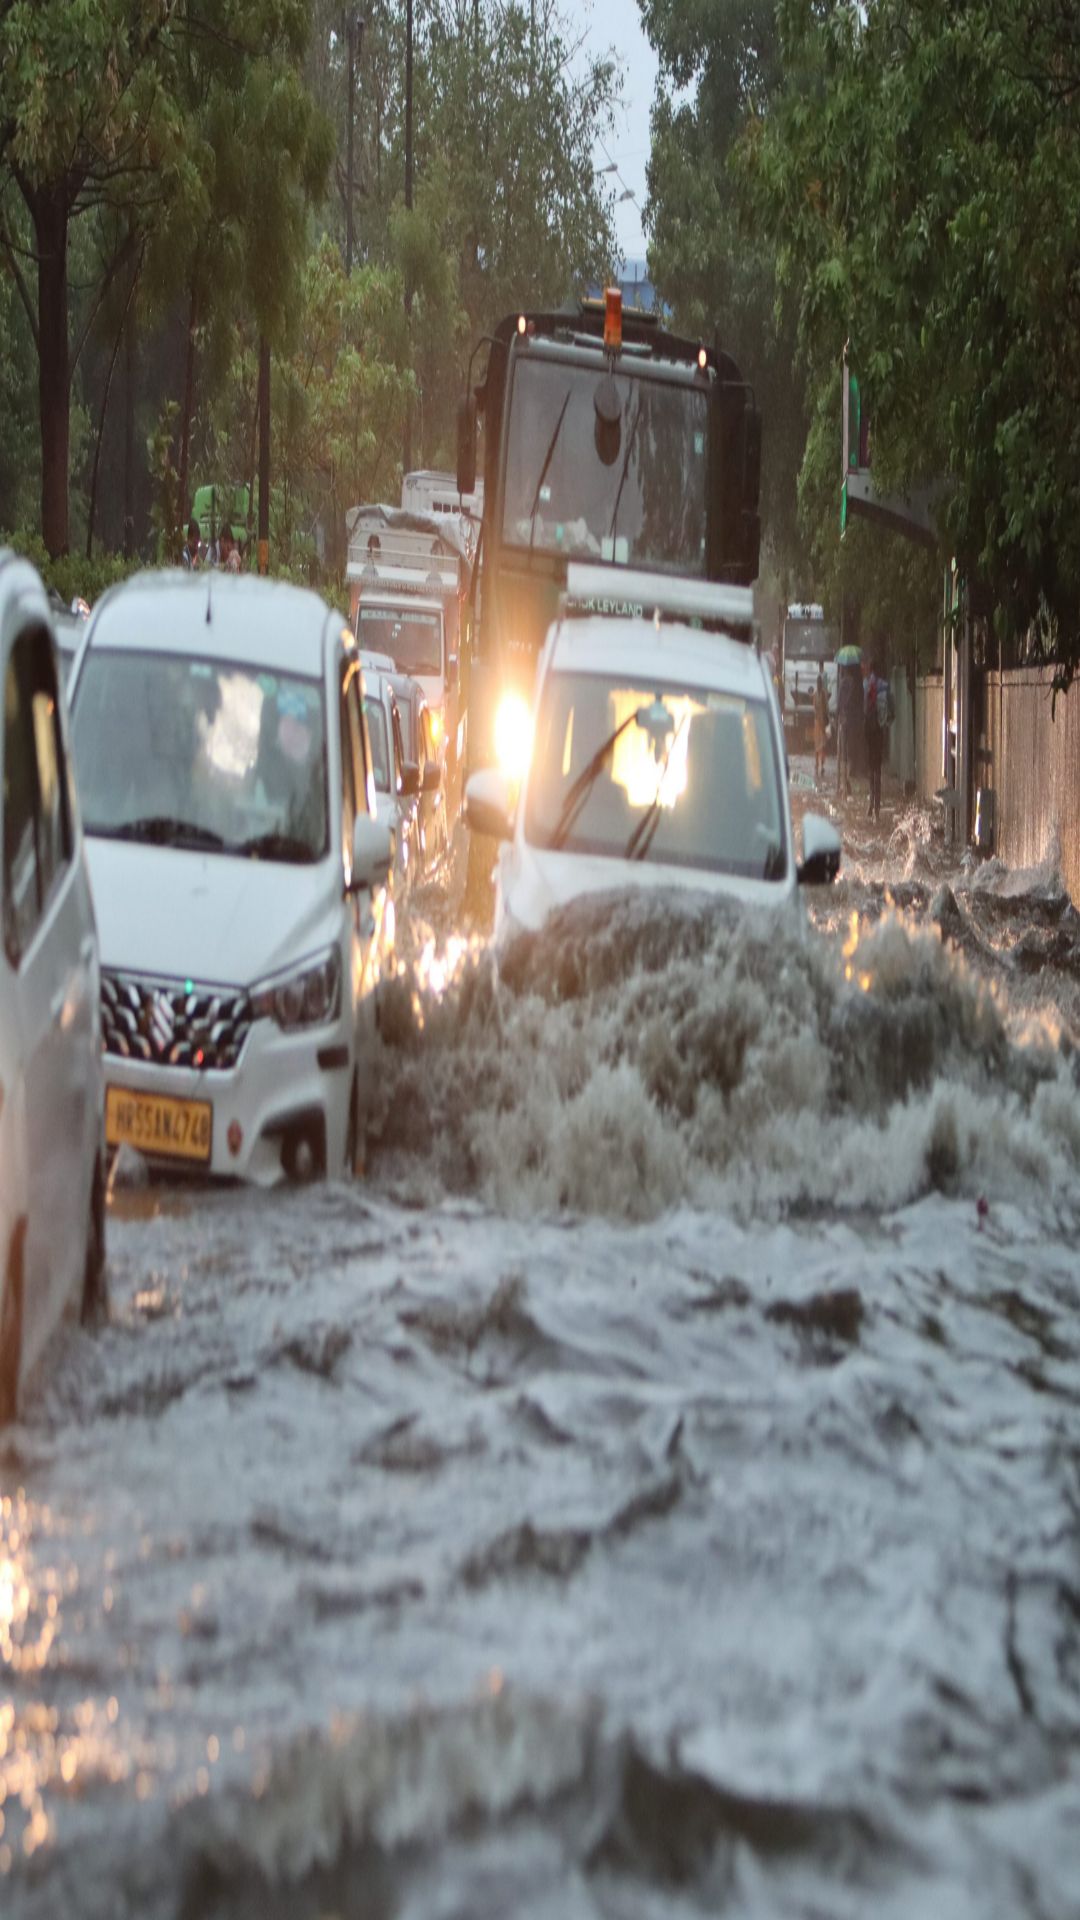 पहली ही बारिश ने किया दिल्ली का बुरा हाल, तस्वीरों में देखें बदहाल सड़कों का नजारा